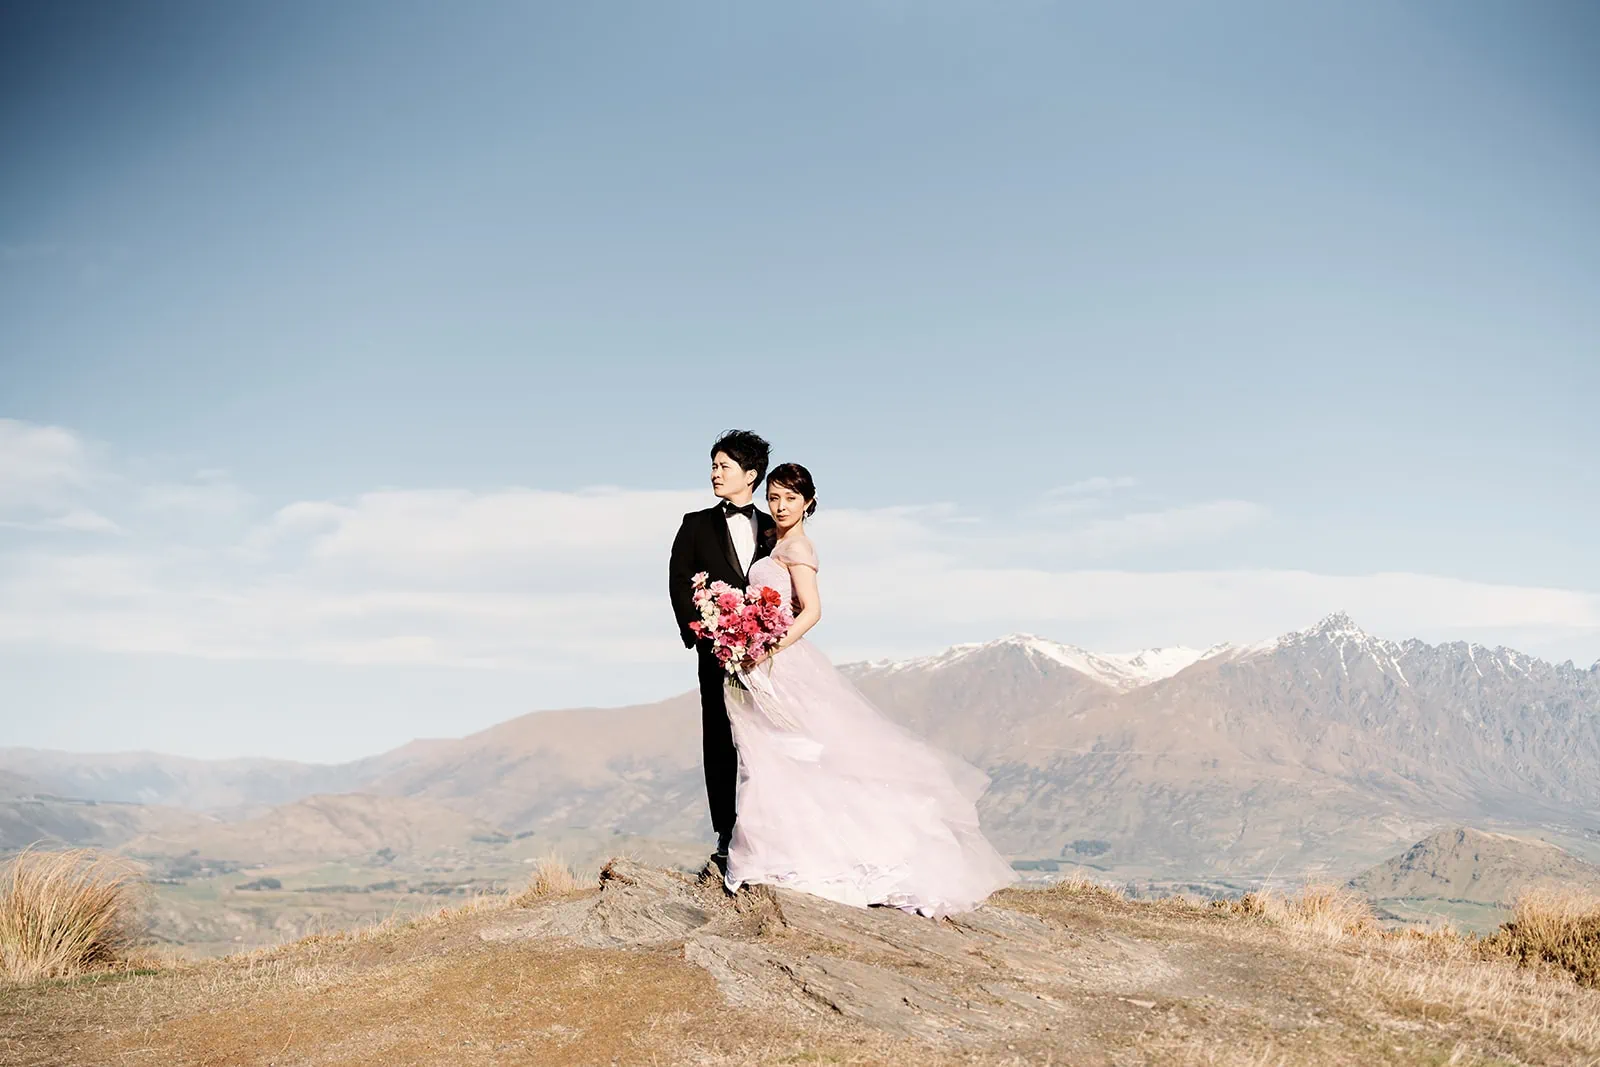 Queenstown New Zealand Elopement Wedding Photographer - A bride and groom elopement on top of Coronet Peak in New Zealand.